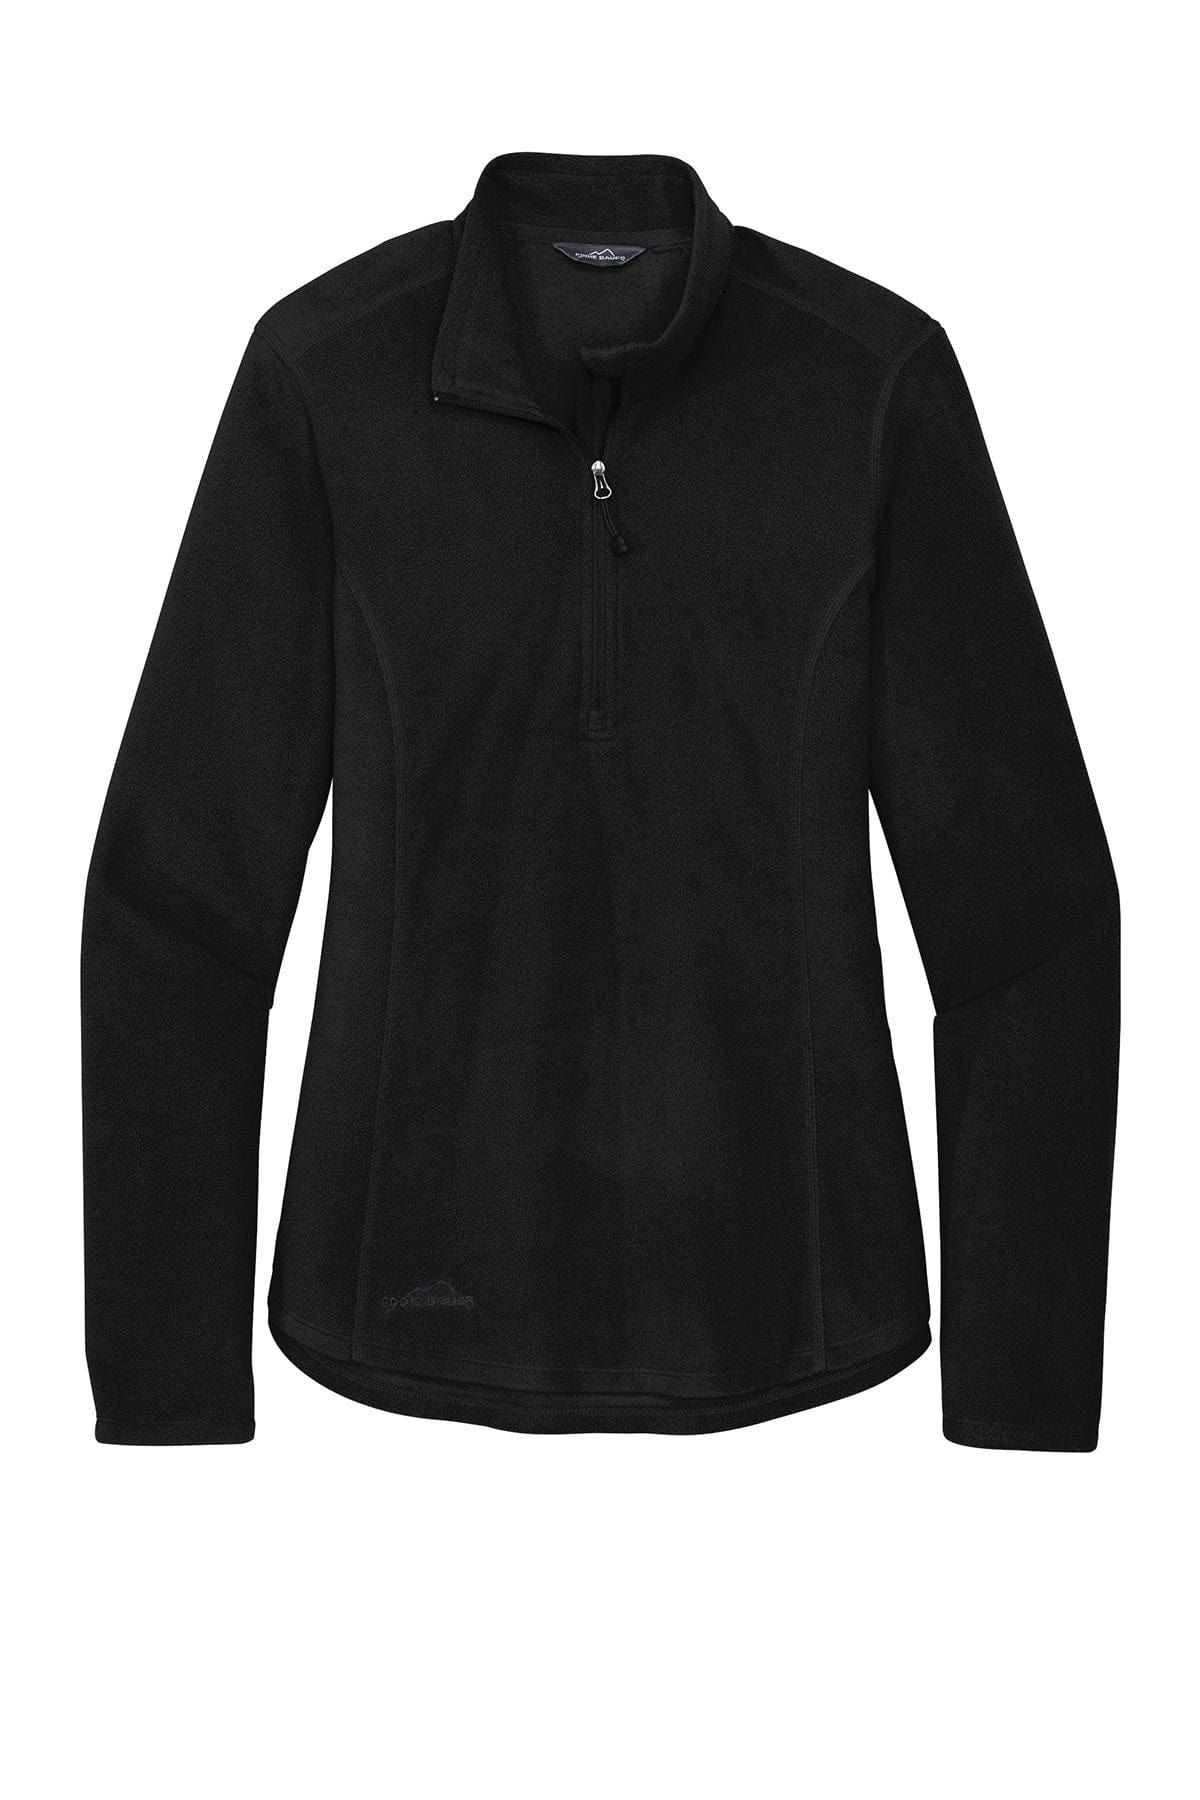 Black / Women's / XS Custom Eddie Bauer Half-Zip Microfleece Jacket